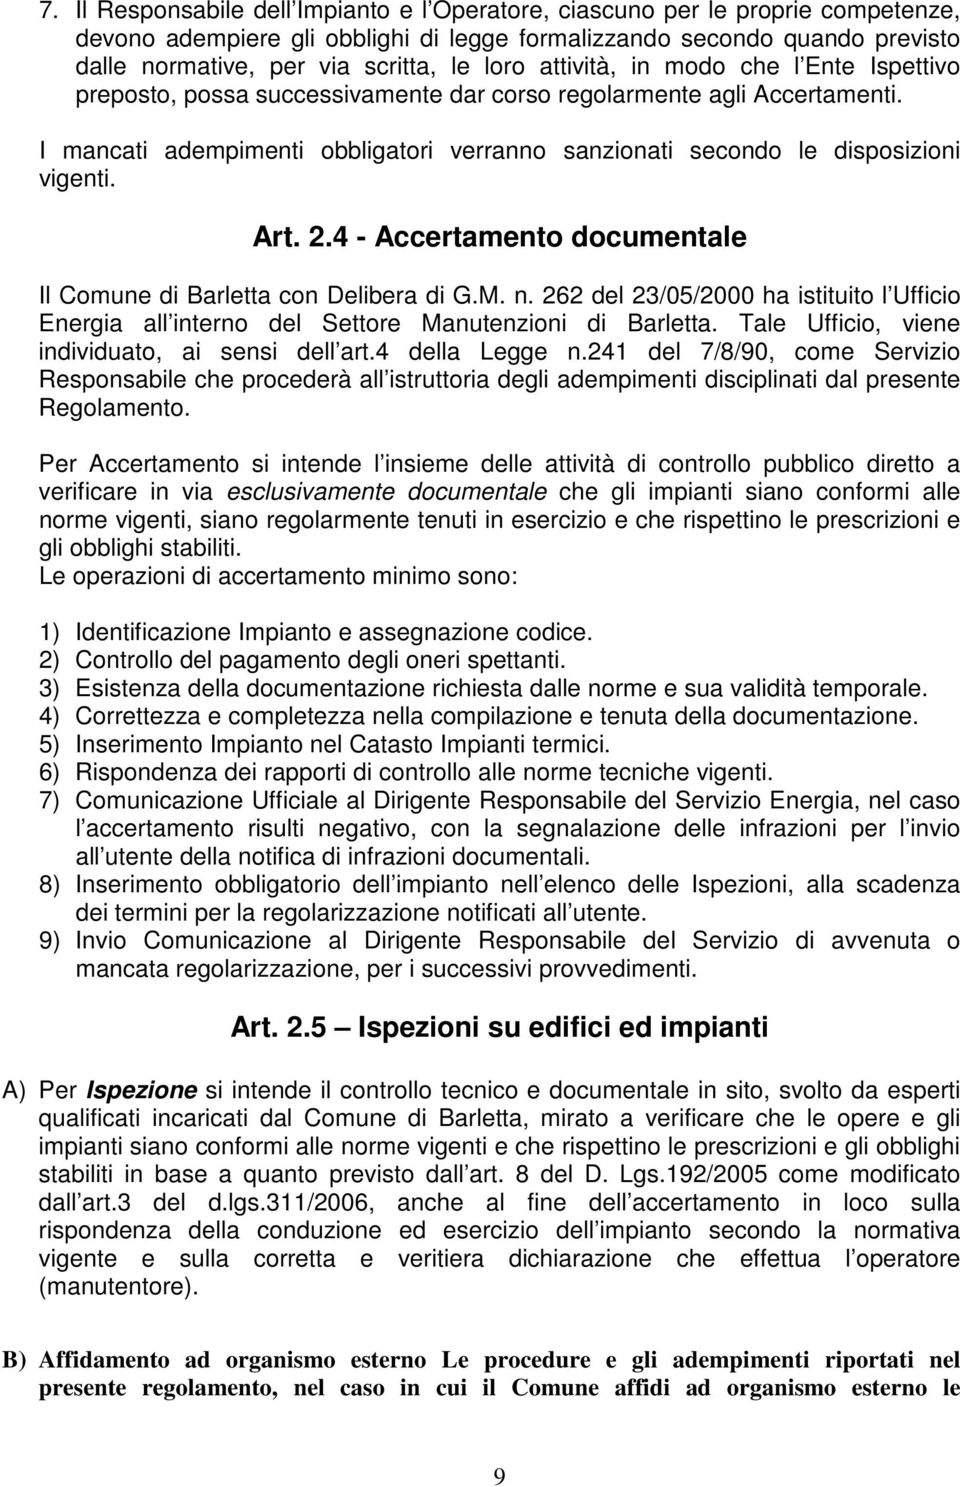 I mancati adempimenti obbligatori verranno sanzionati secondo le disposizioni vigenti. Art. 2.4 - Accertamento documentale Il Comune di Barletta con Delibera di G.M. n.